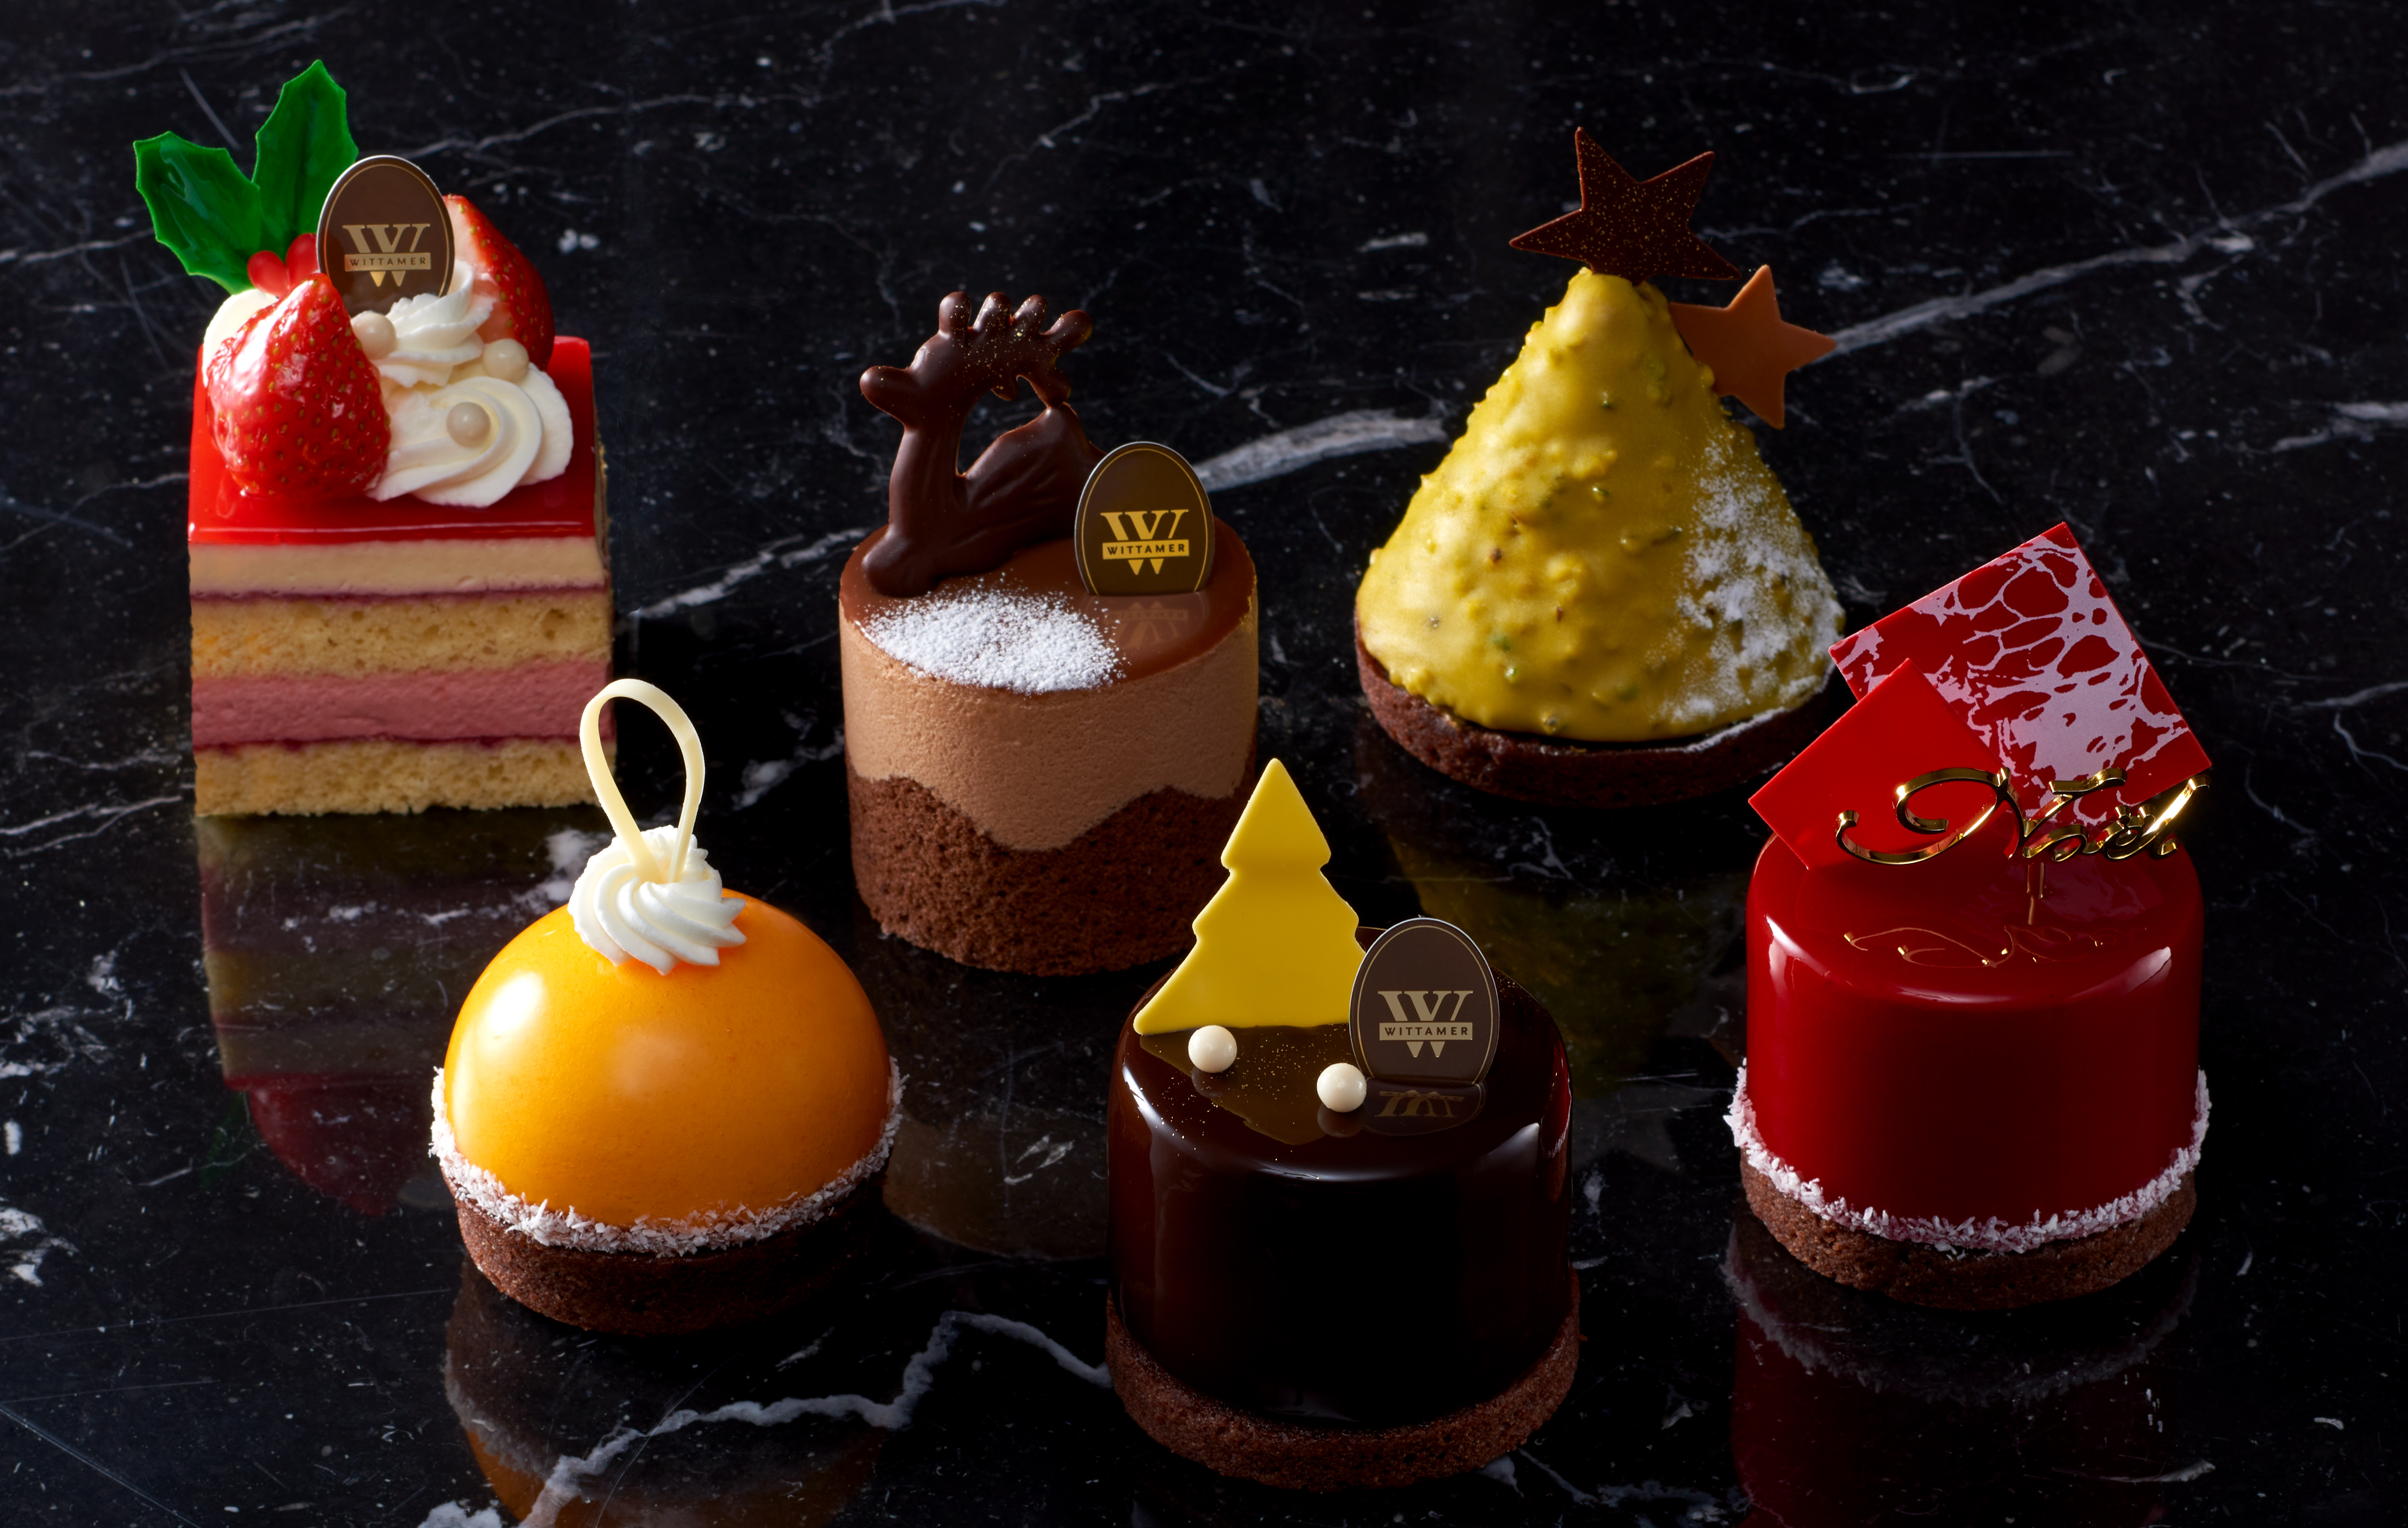 ベルギー王室御用達チョコレートブランド ヴィタメール 21年 クリスマスケーキをご紹介いたします 株式会社 エーデルワイスのプレスリリース